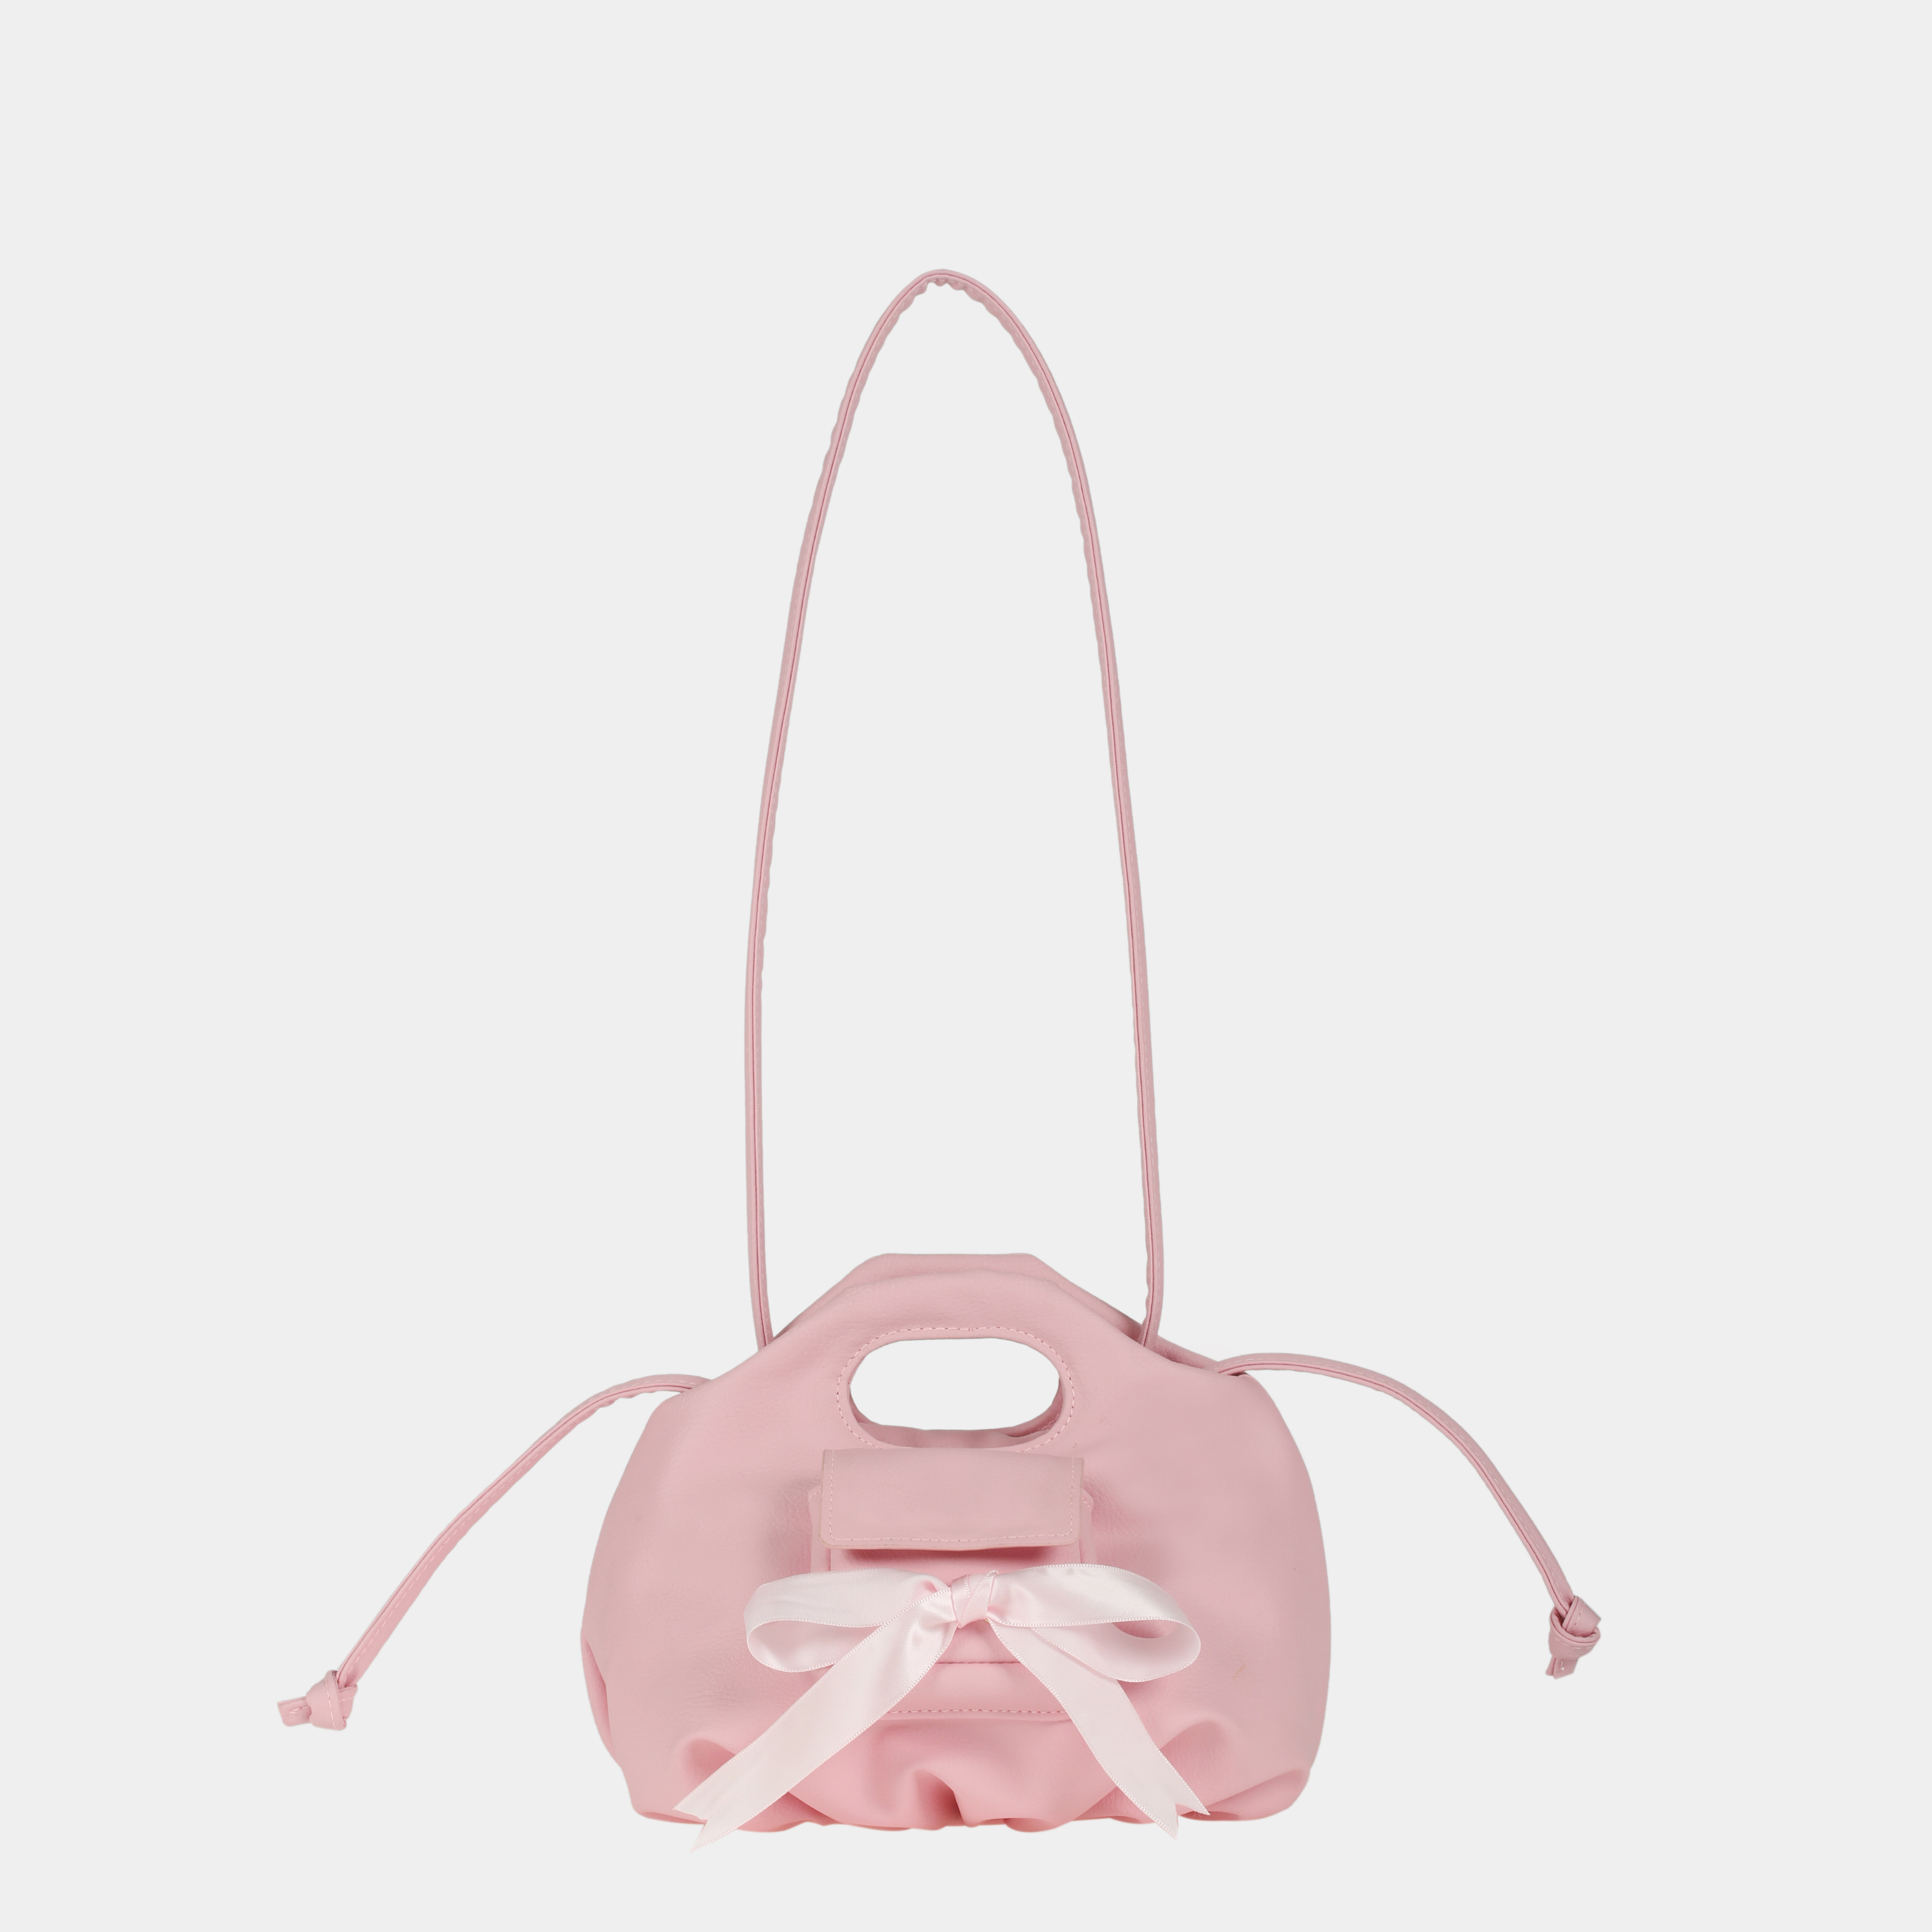 TÚI XÁCH Flower Mini Pocket & Bow màu hồng